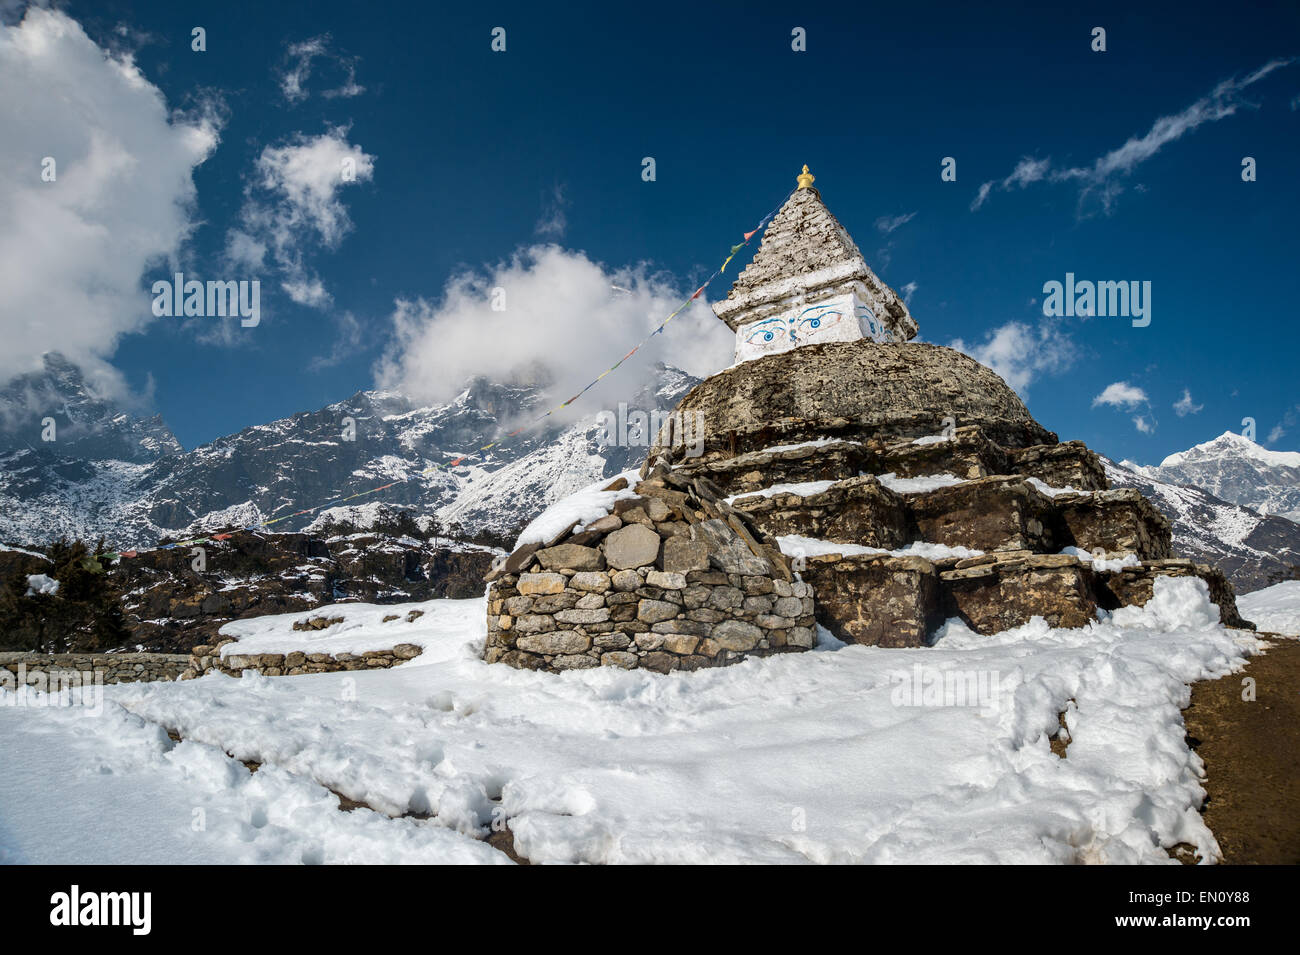 El parque nacional de Sagarmatha (Nepal) - 9 de marzo de 2015: stupa en la región himalaya Foto de stock